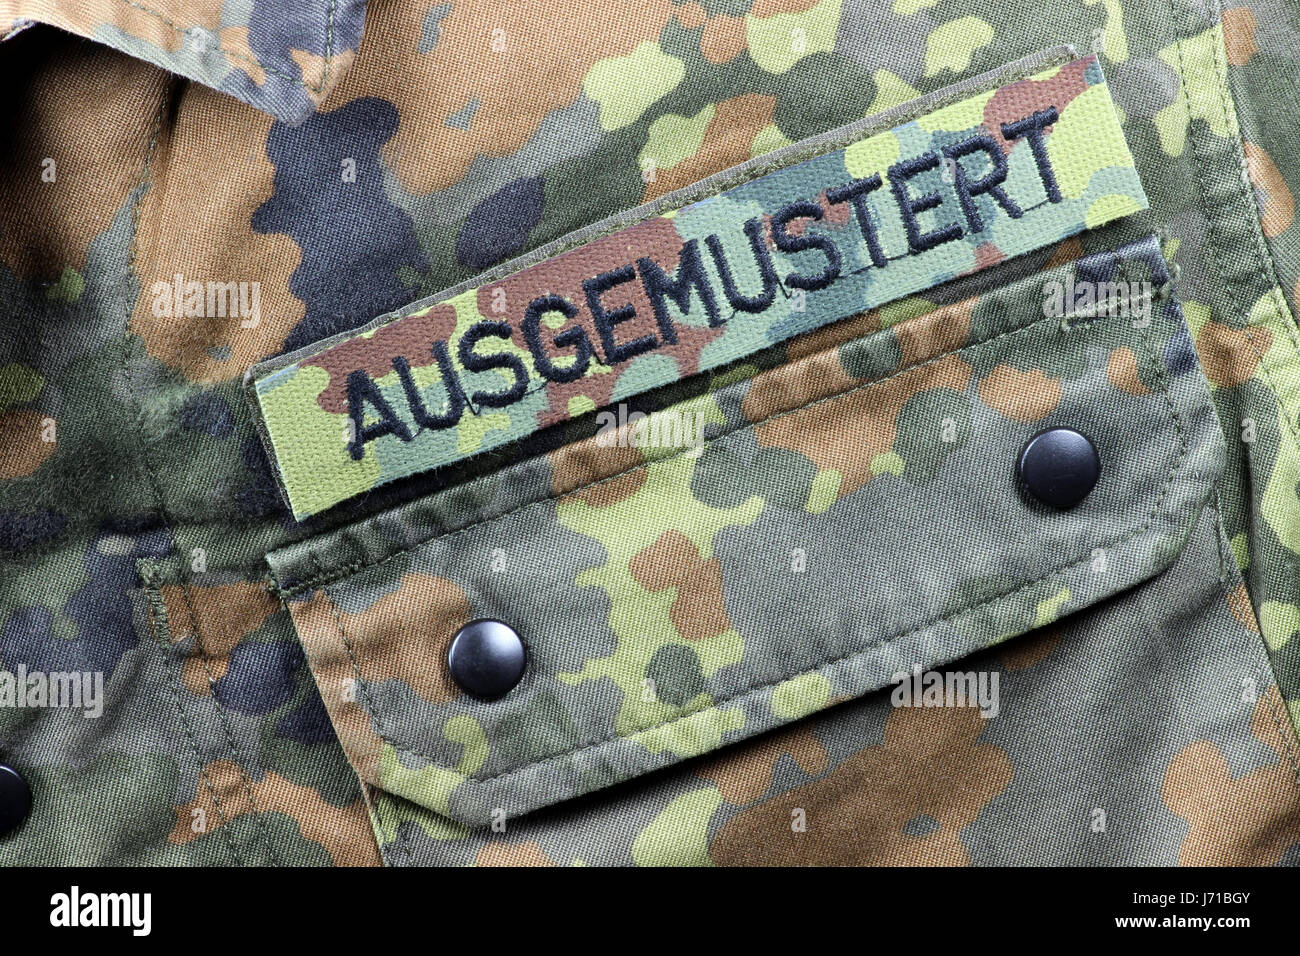 Veste camouflage allemand patched retiré du service au lieu de l'étiquette- nom Photo Stock - Alamy